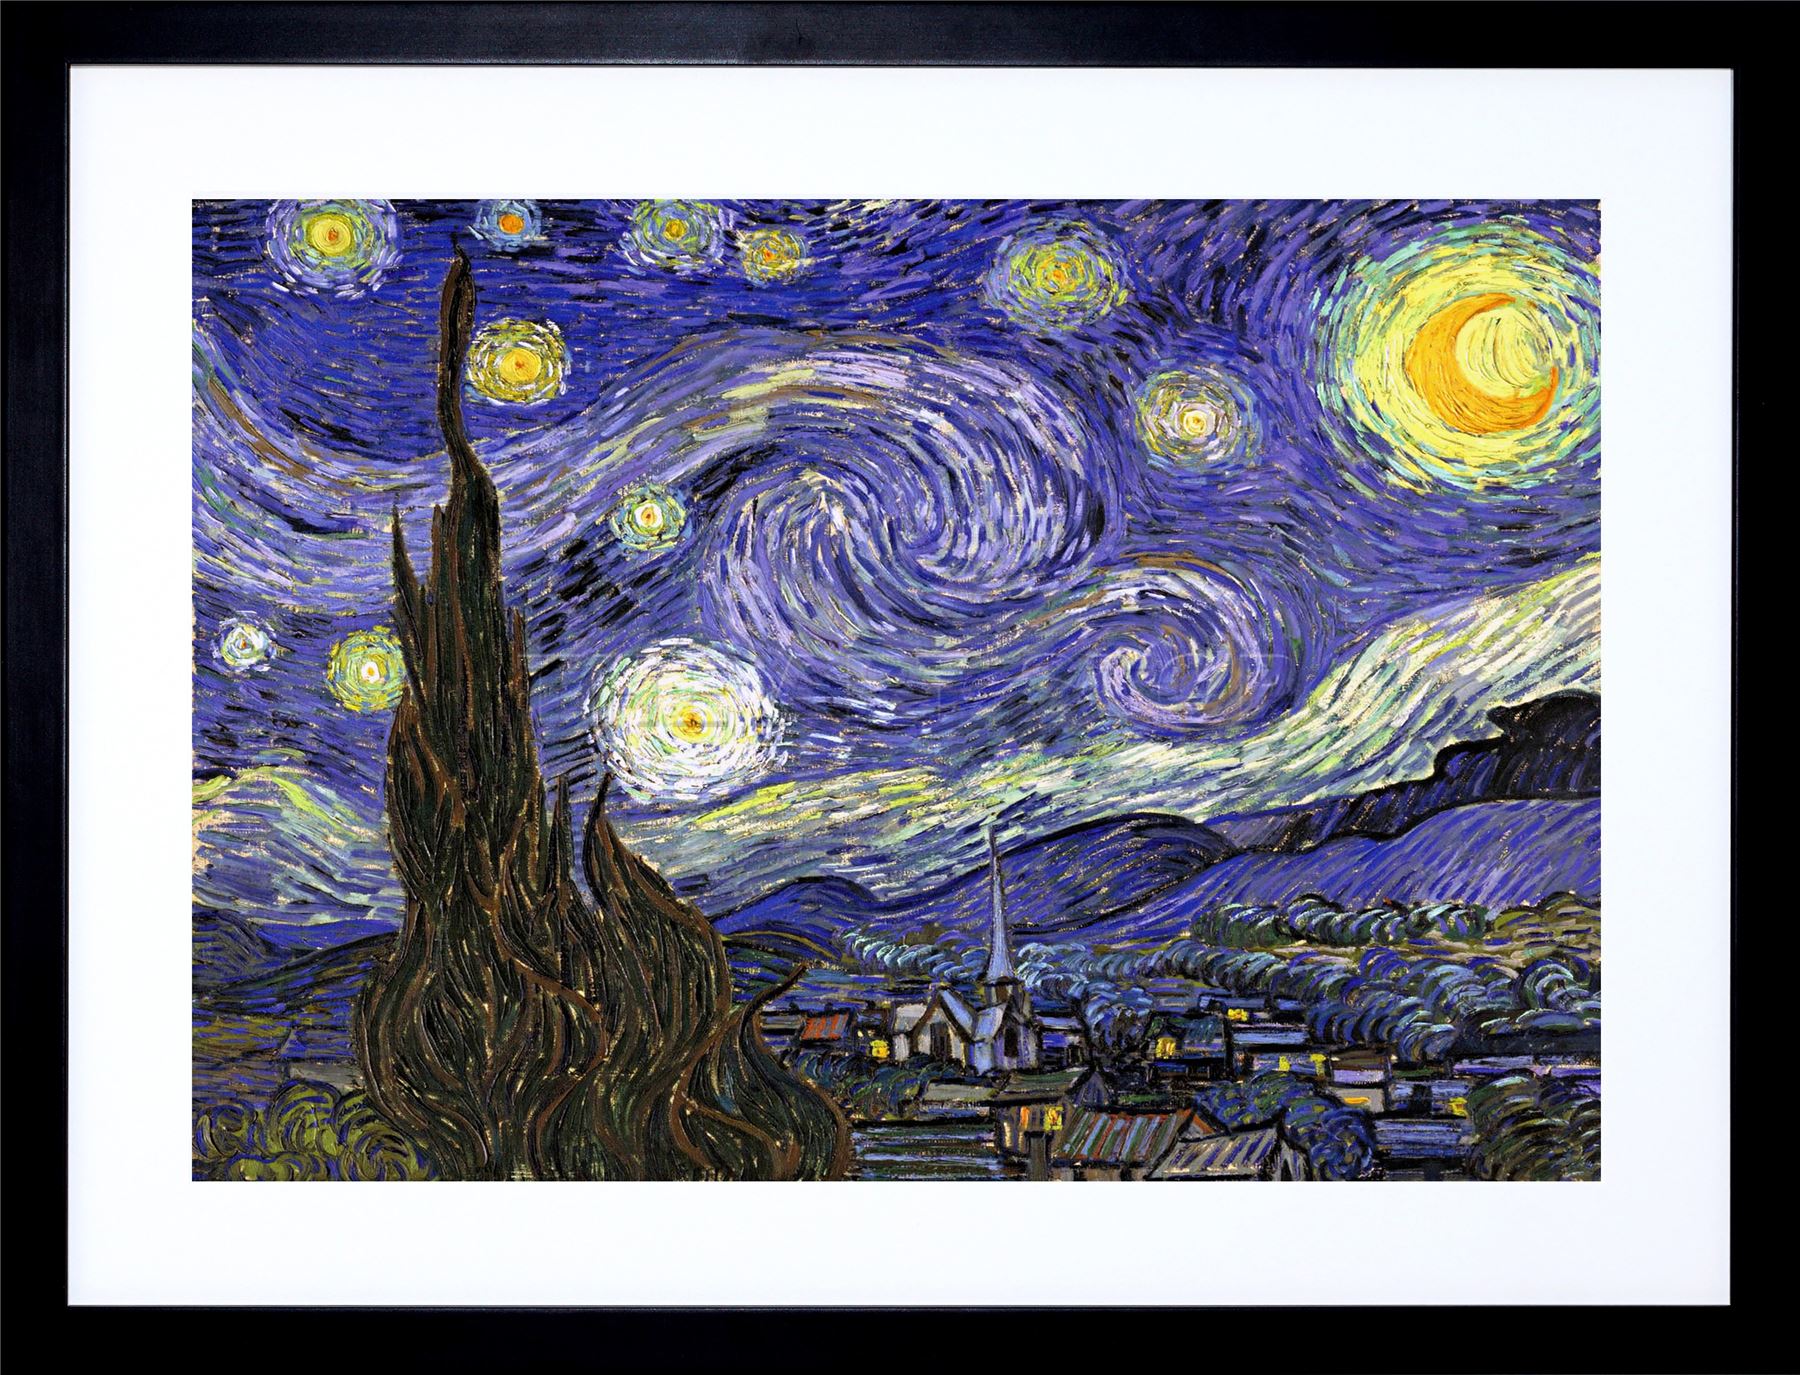 Starry night описание картины - 95 фото